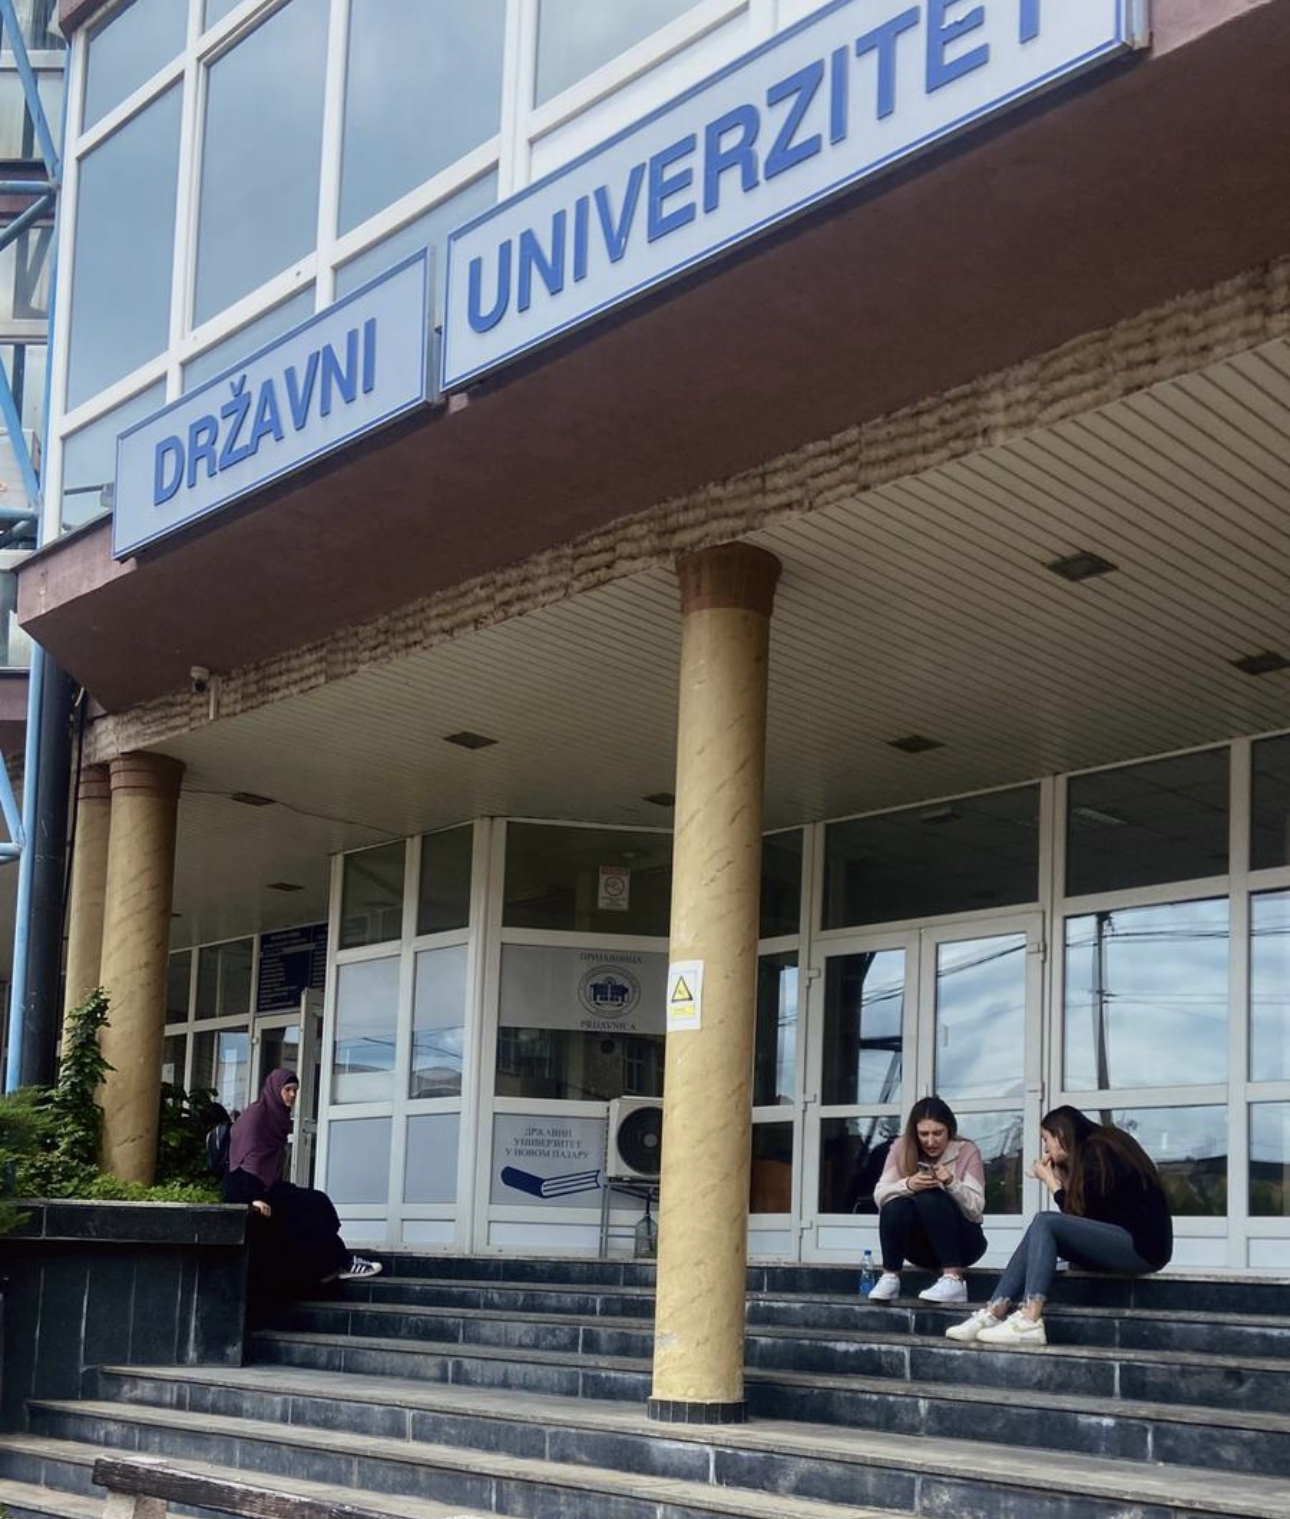 Ukupno 544 upisanih brucoša na Državnom univerzitetu u Novom Pazaru